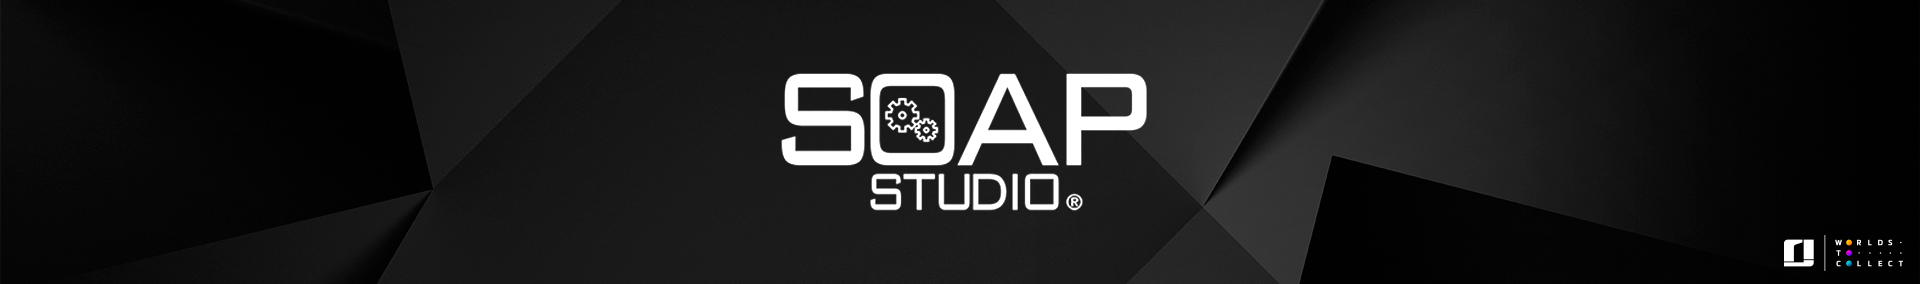 Soap Studios